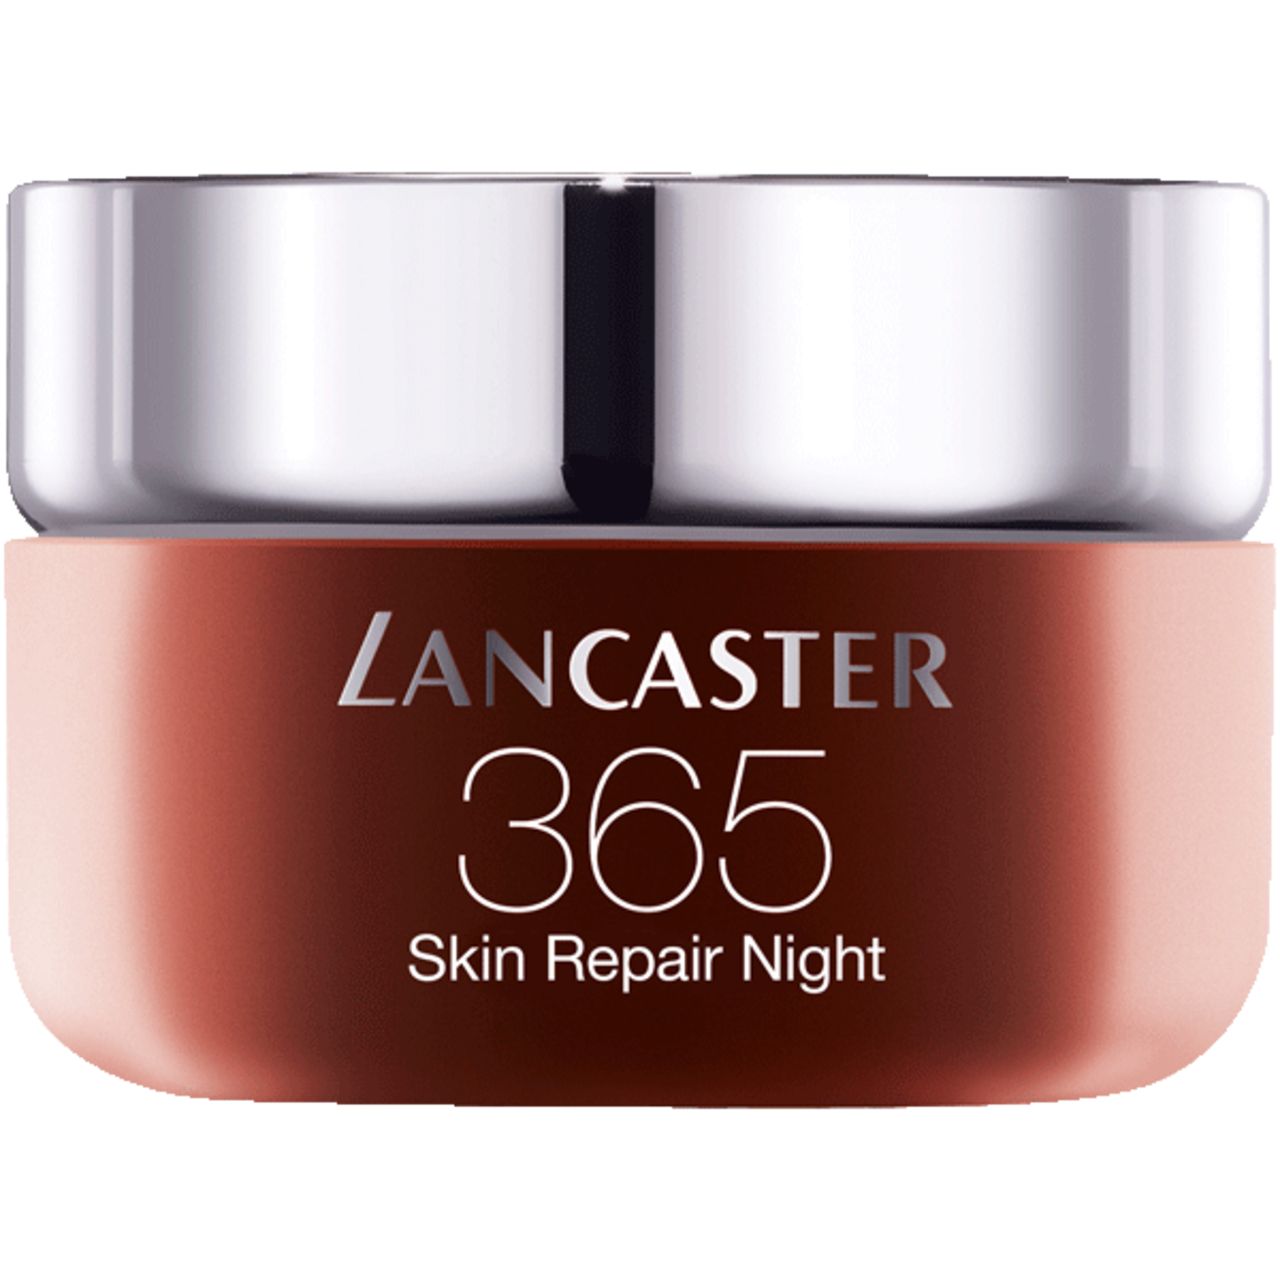 Lancaster, 365 Skin Repair Night